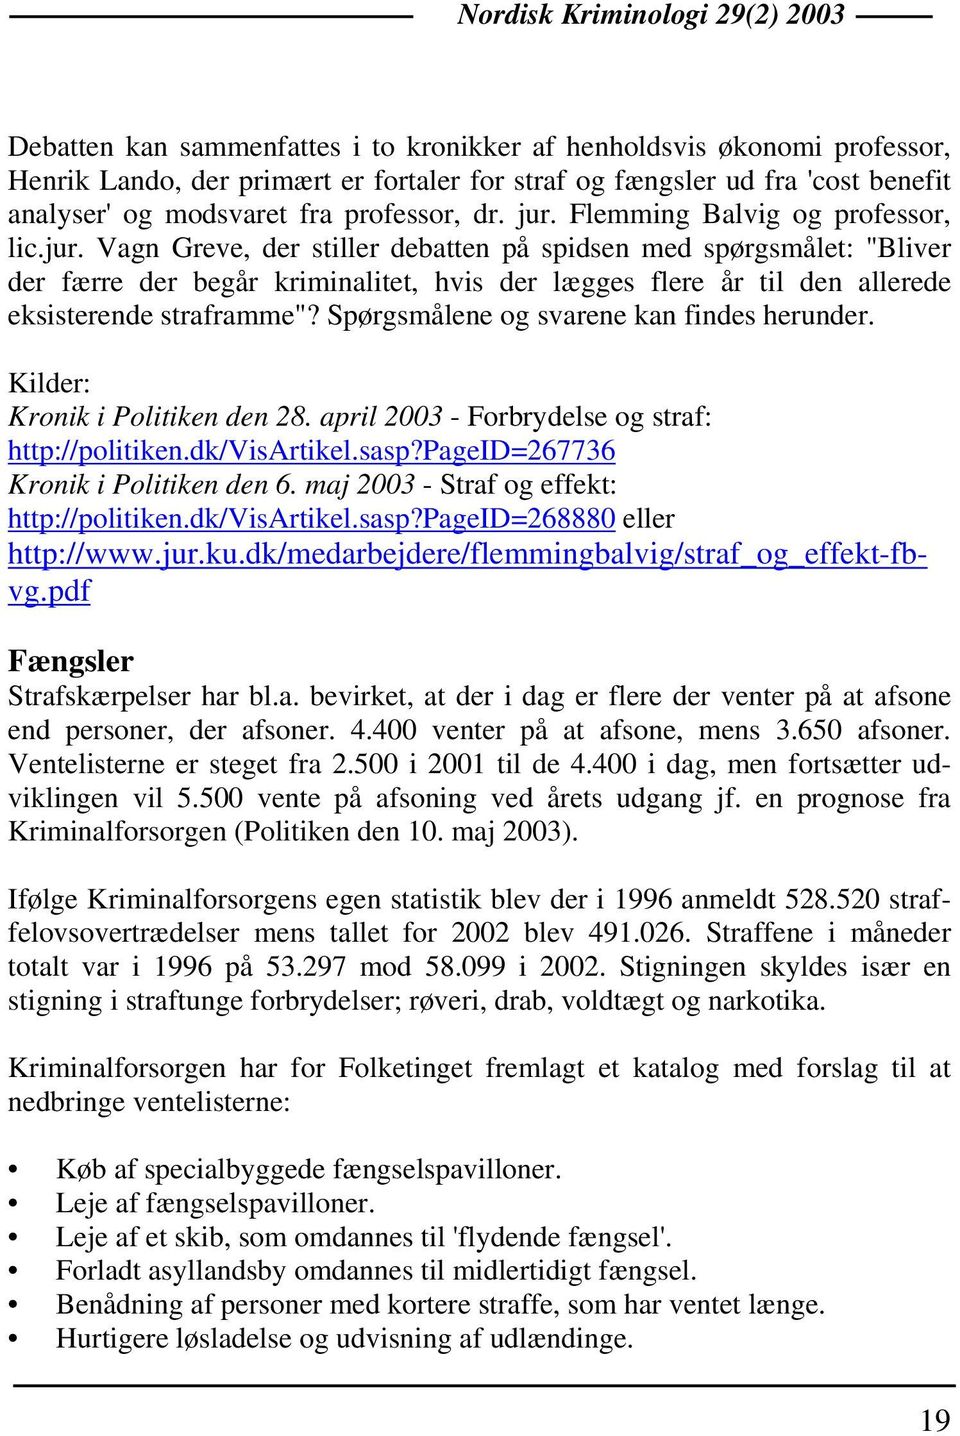 Spørgsmålene og svarene kan findes herunder. Kilder: Kronik i Politiken den 28. april 2003 - Forbrydelse og straf: http://politiken.dk/visartikel.sasp?pageid=267736 Kronik i Politiken den 6.